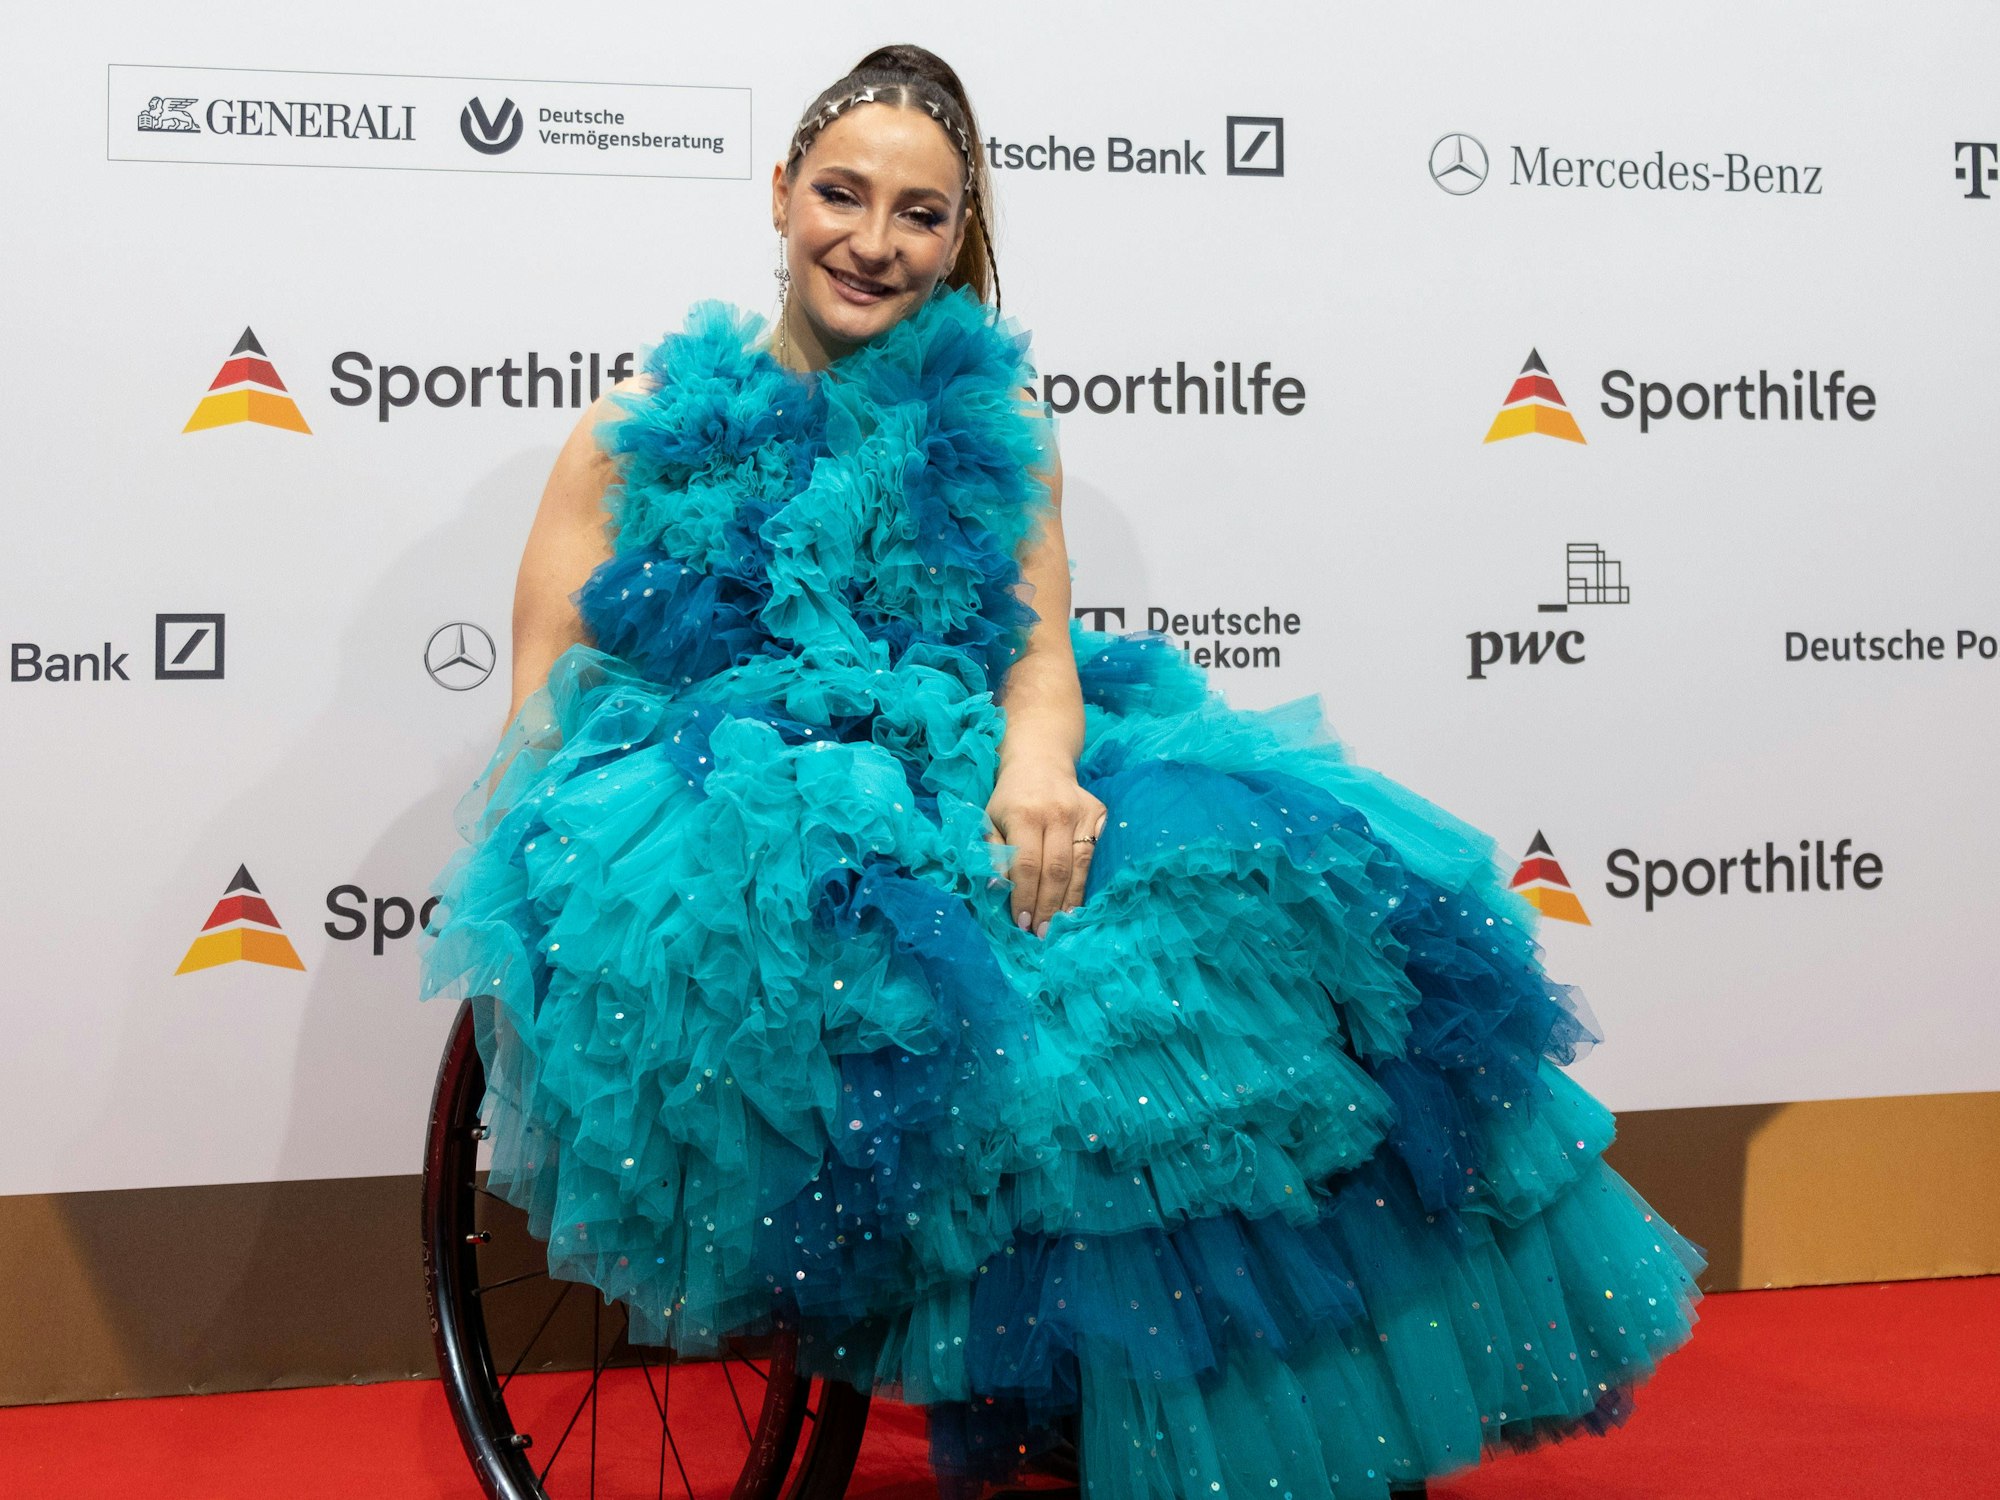 Bahnrad-Olympiasiegerin Kristina Vogel in einem blau-türkisen Kleid mit Rollstuhl auf dem Roten Teppich.